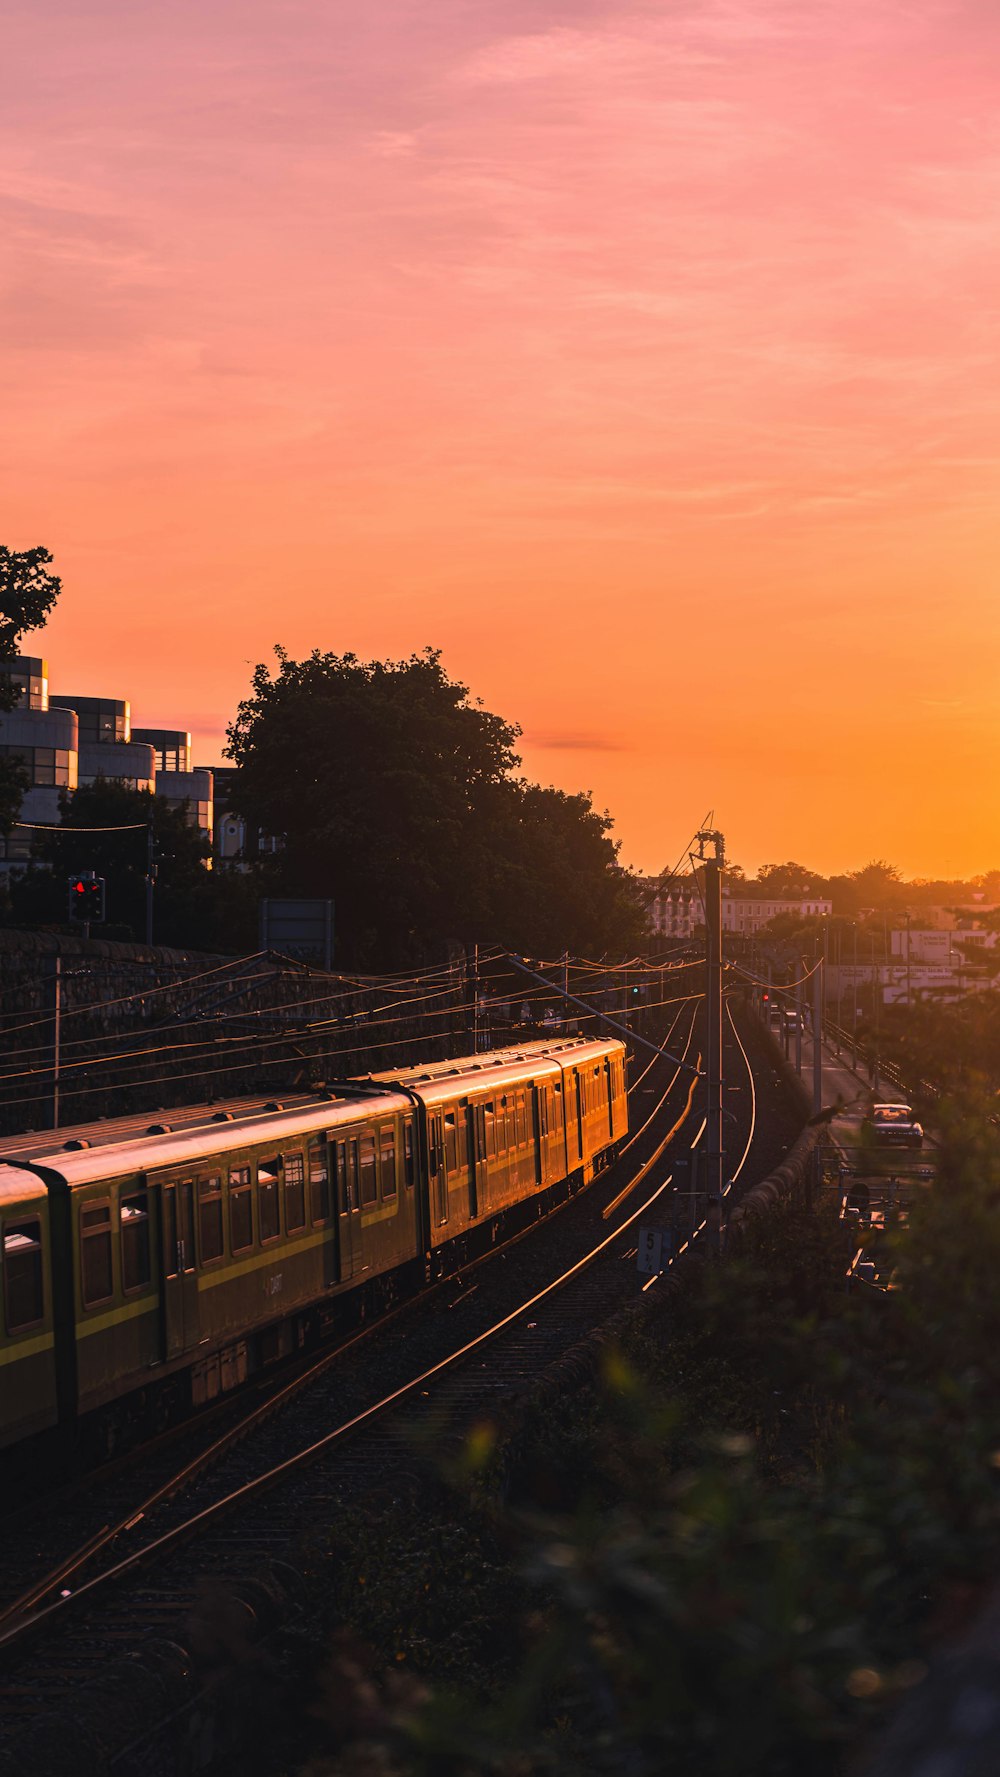 trem amarelo e preto nos trilhos ferroviários durante o pôr do sol